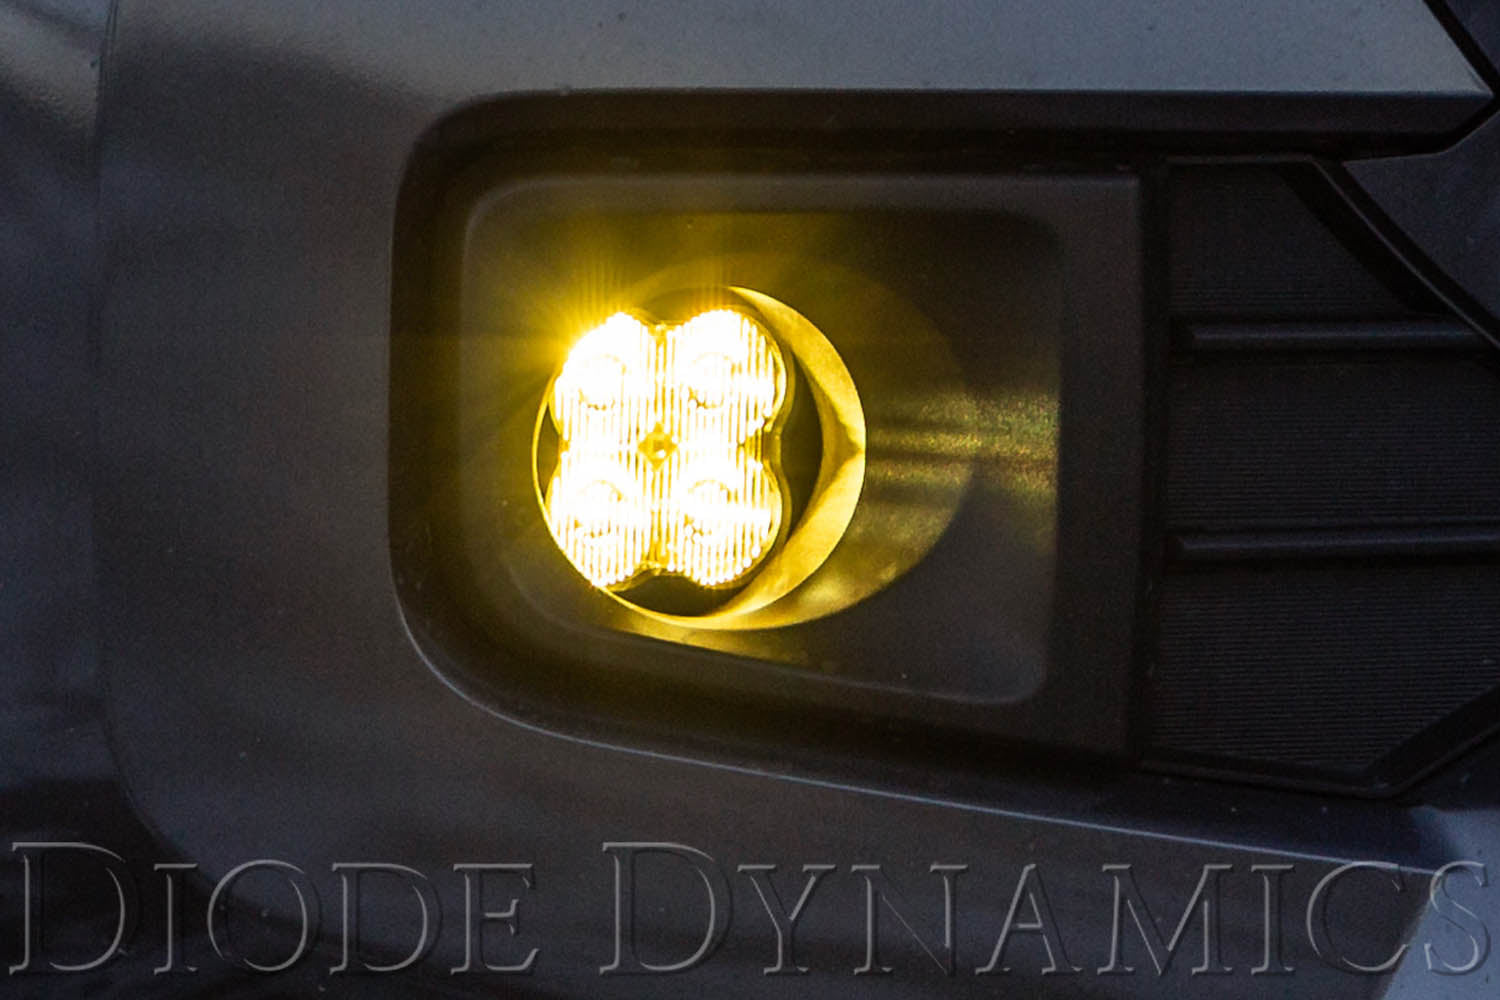 SS3 LED Fog Light Kit for 2008-2010 Toyota Highlander White SAE/DOT Driving Pro Diode Dynamics